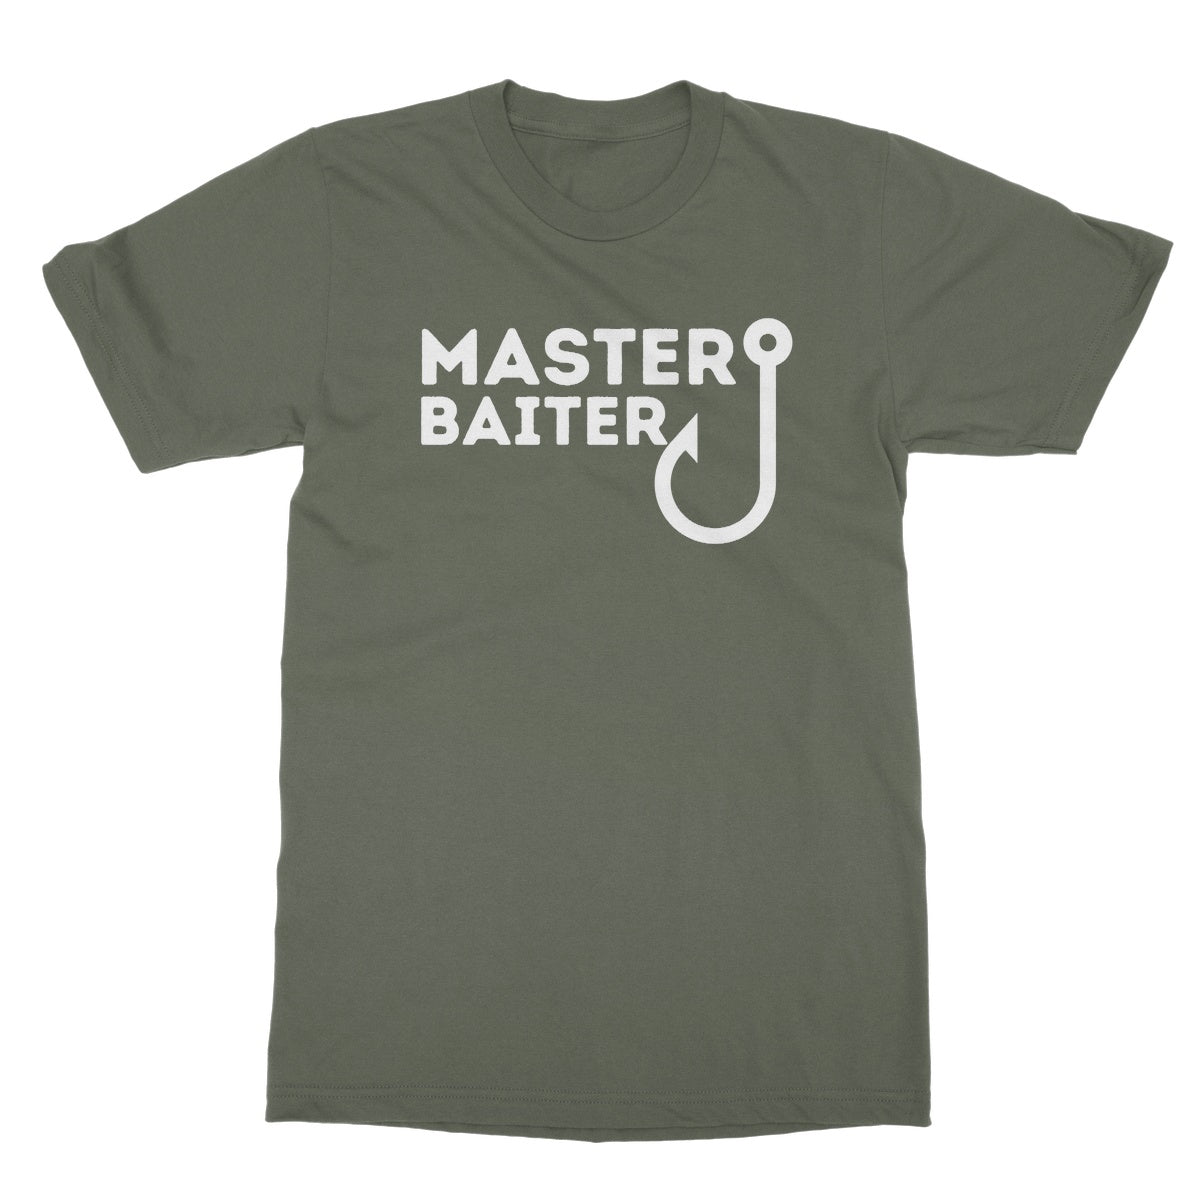 master baiter t shirt green